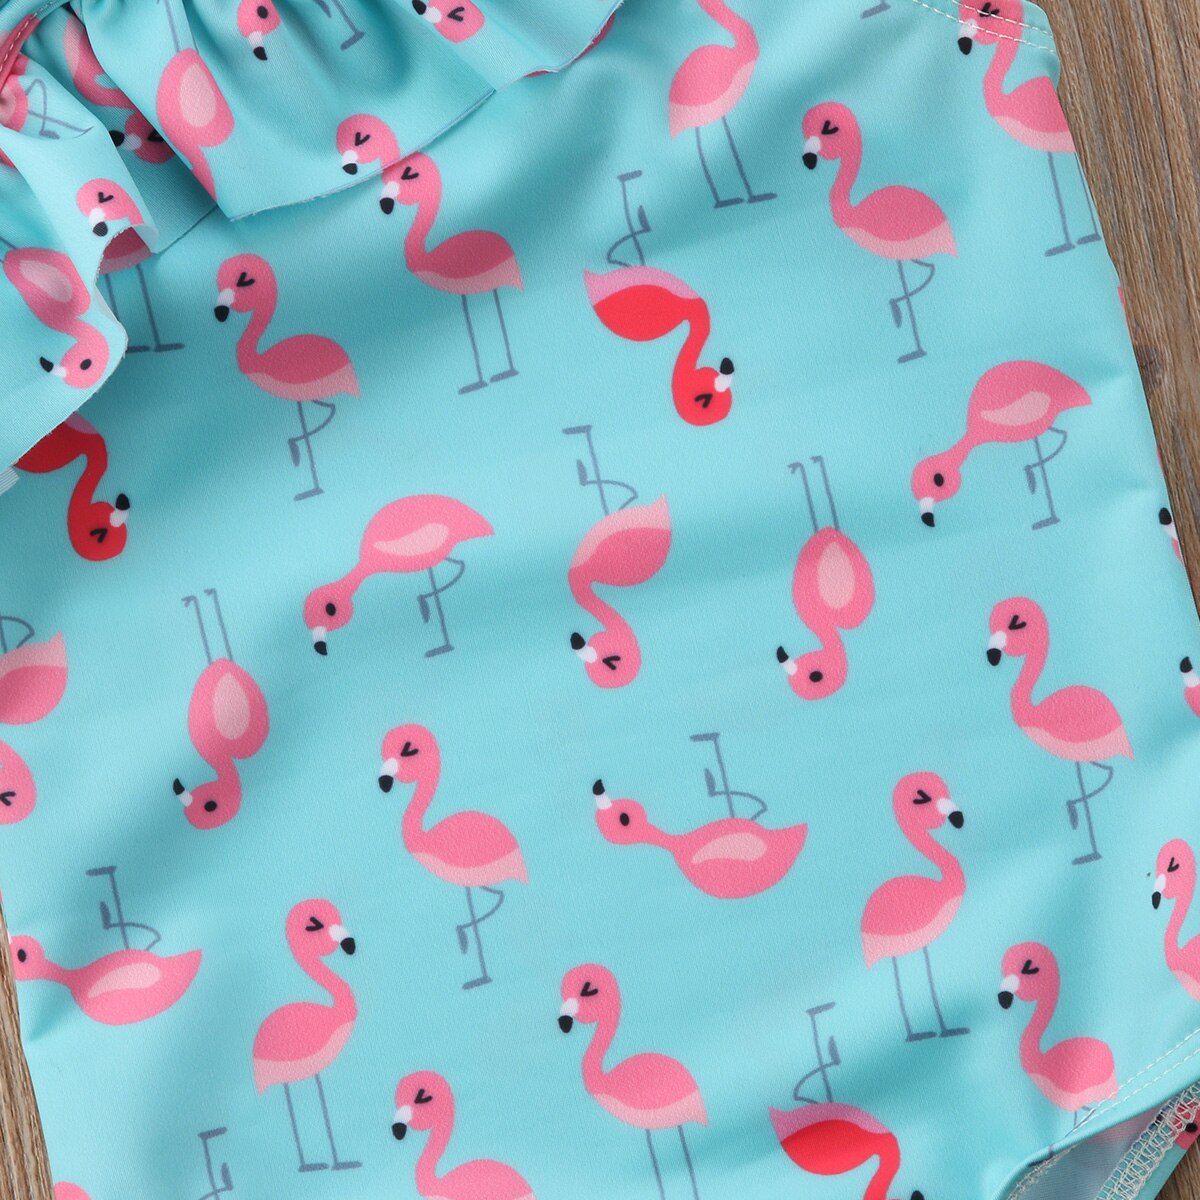 Baby pige børn flamingo badedragt badetøj himmelblå svane tankini bikini badedragt et stykke jakkesæt